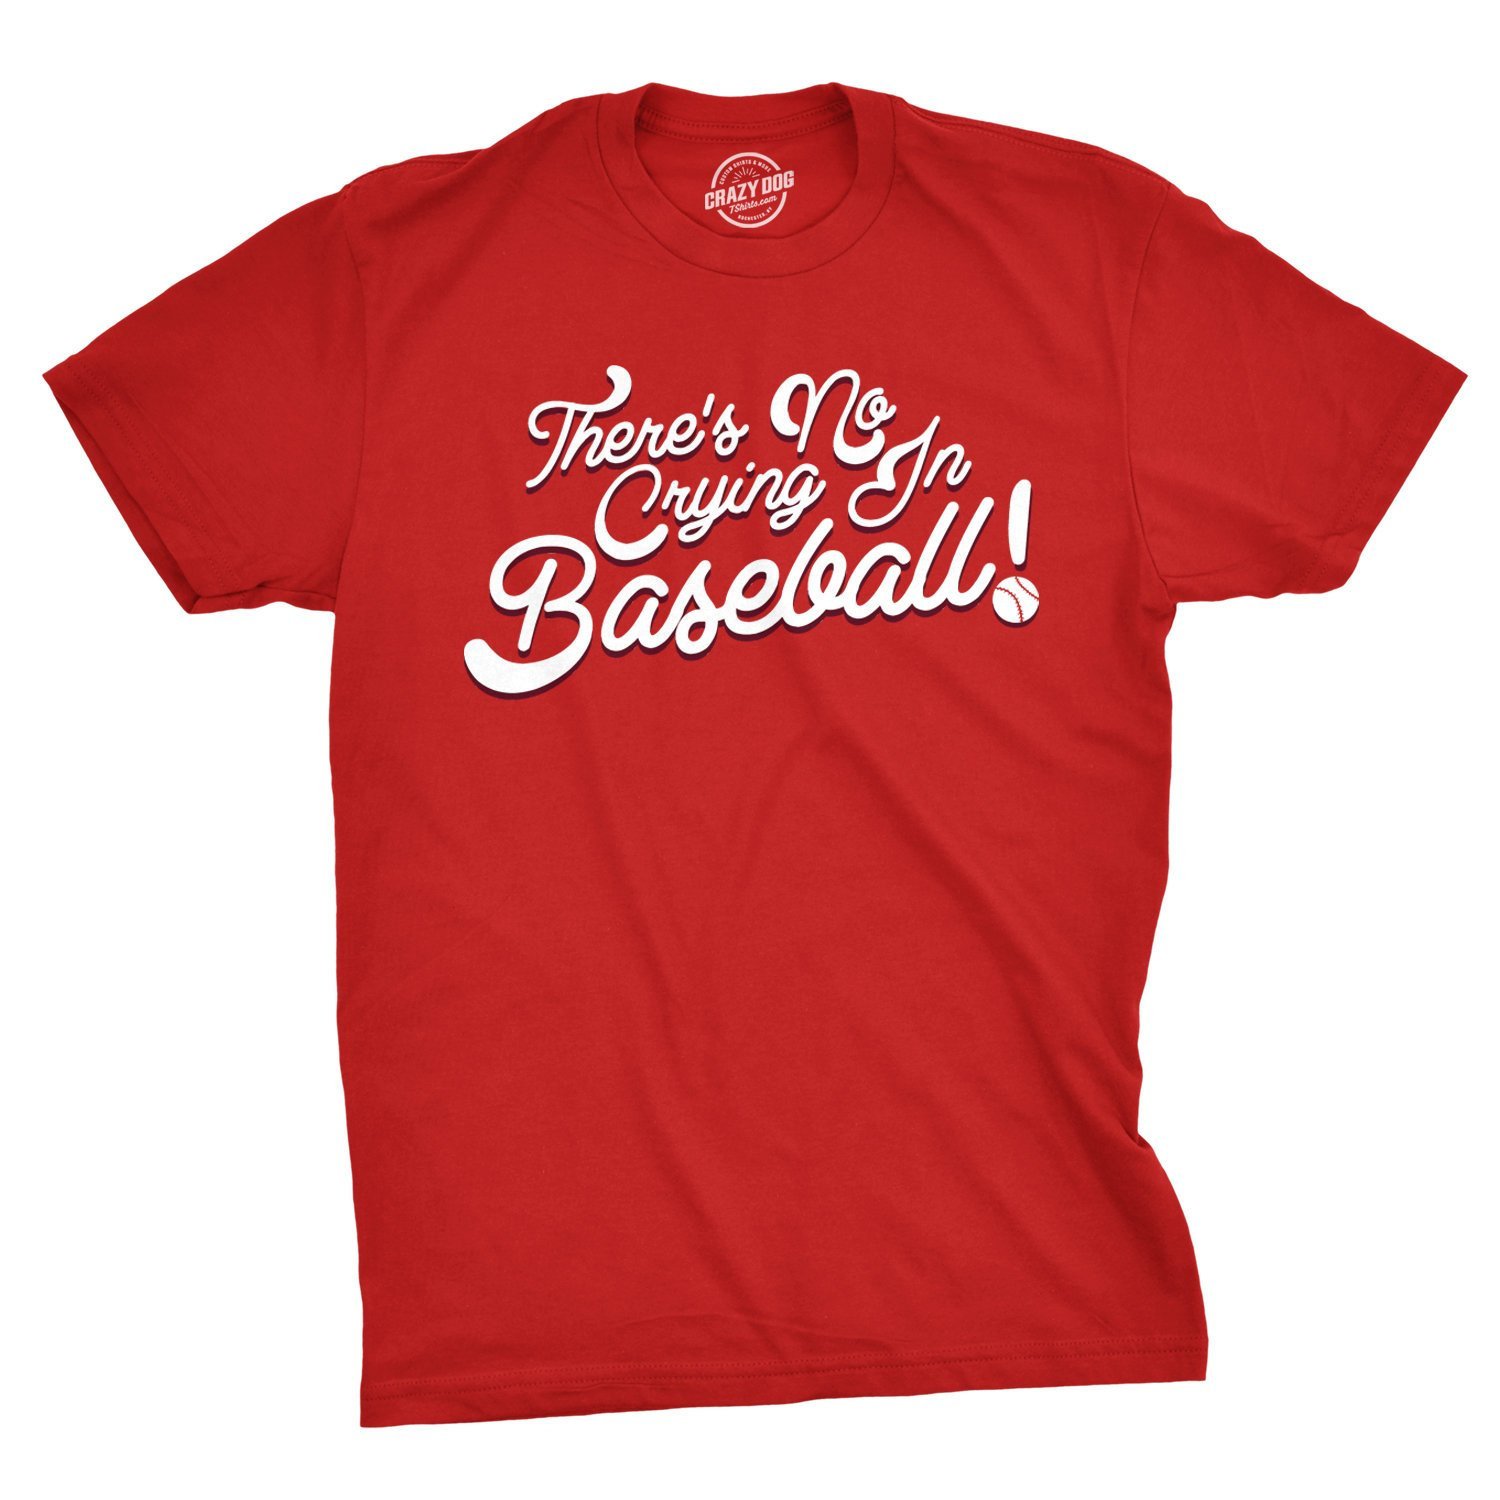 Baseball Shirt Dad, Baseball Shirt Funny, Baseball T Shirt Red, Mens Sports  Shirt, No Crying In Base on Luulla